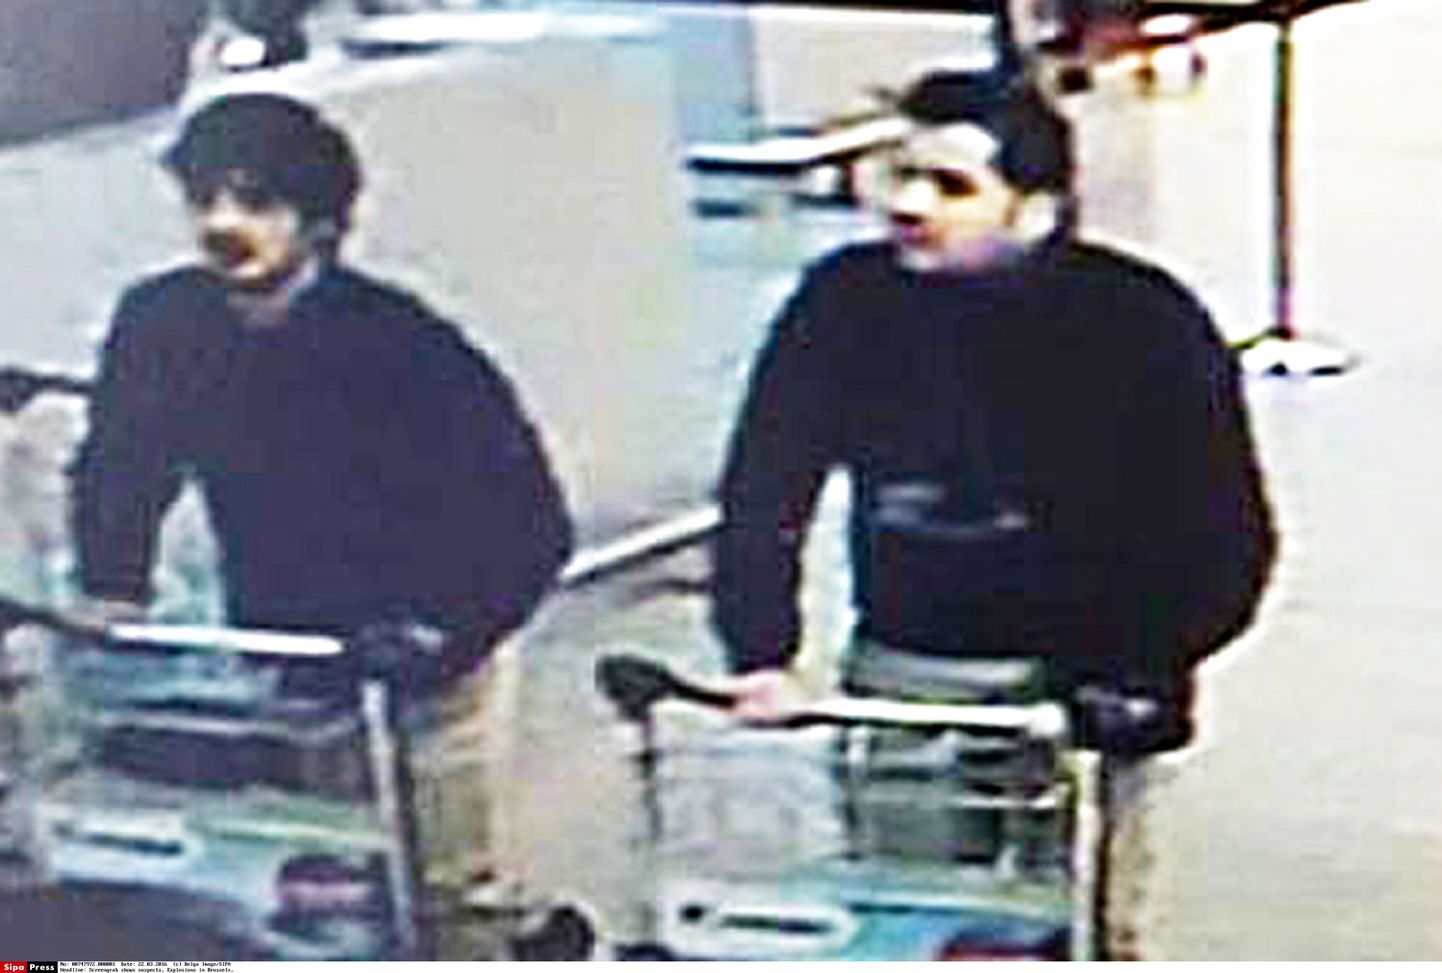 Братья Халид и Брахим Бакрауи идентифицированы среди вероятных смертников в атаках в Брюсселе.